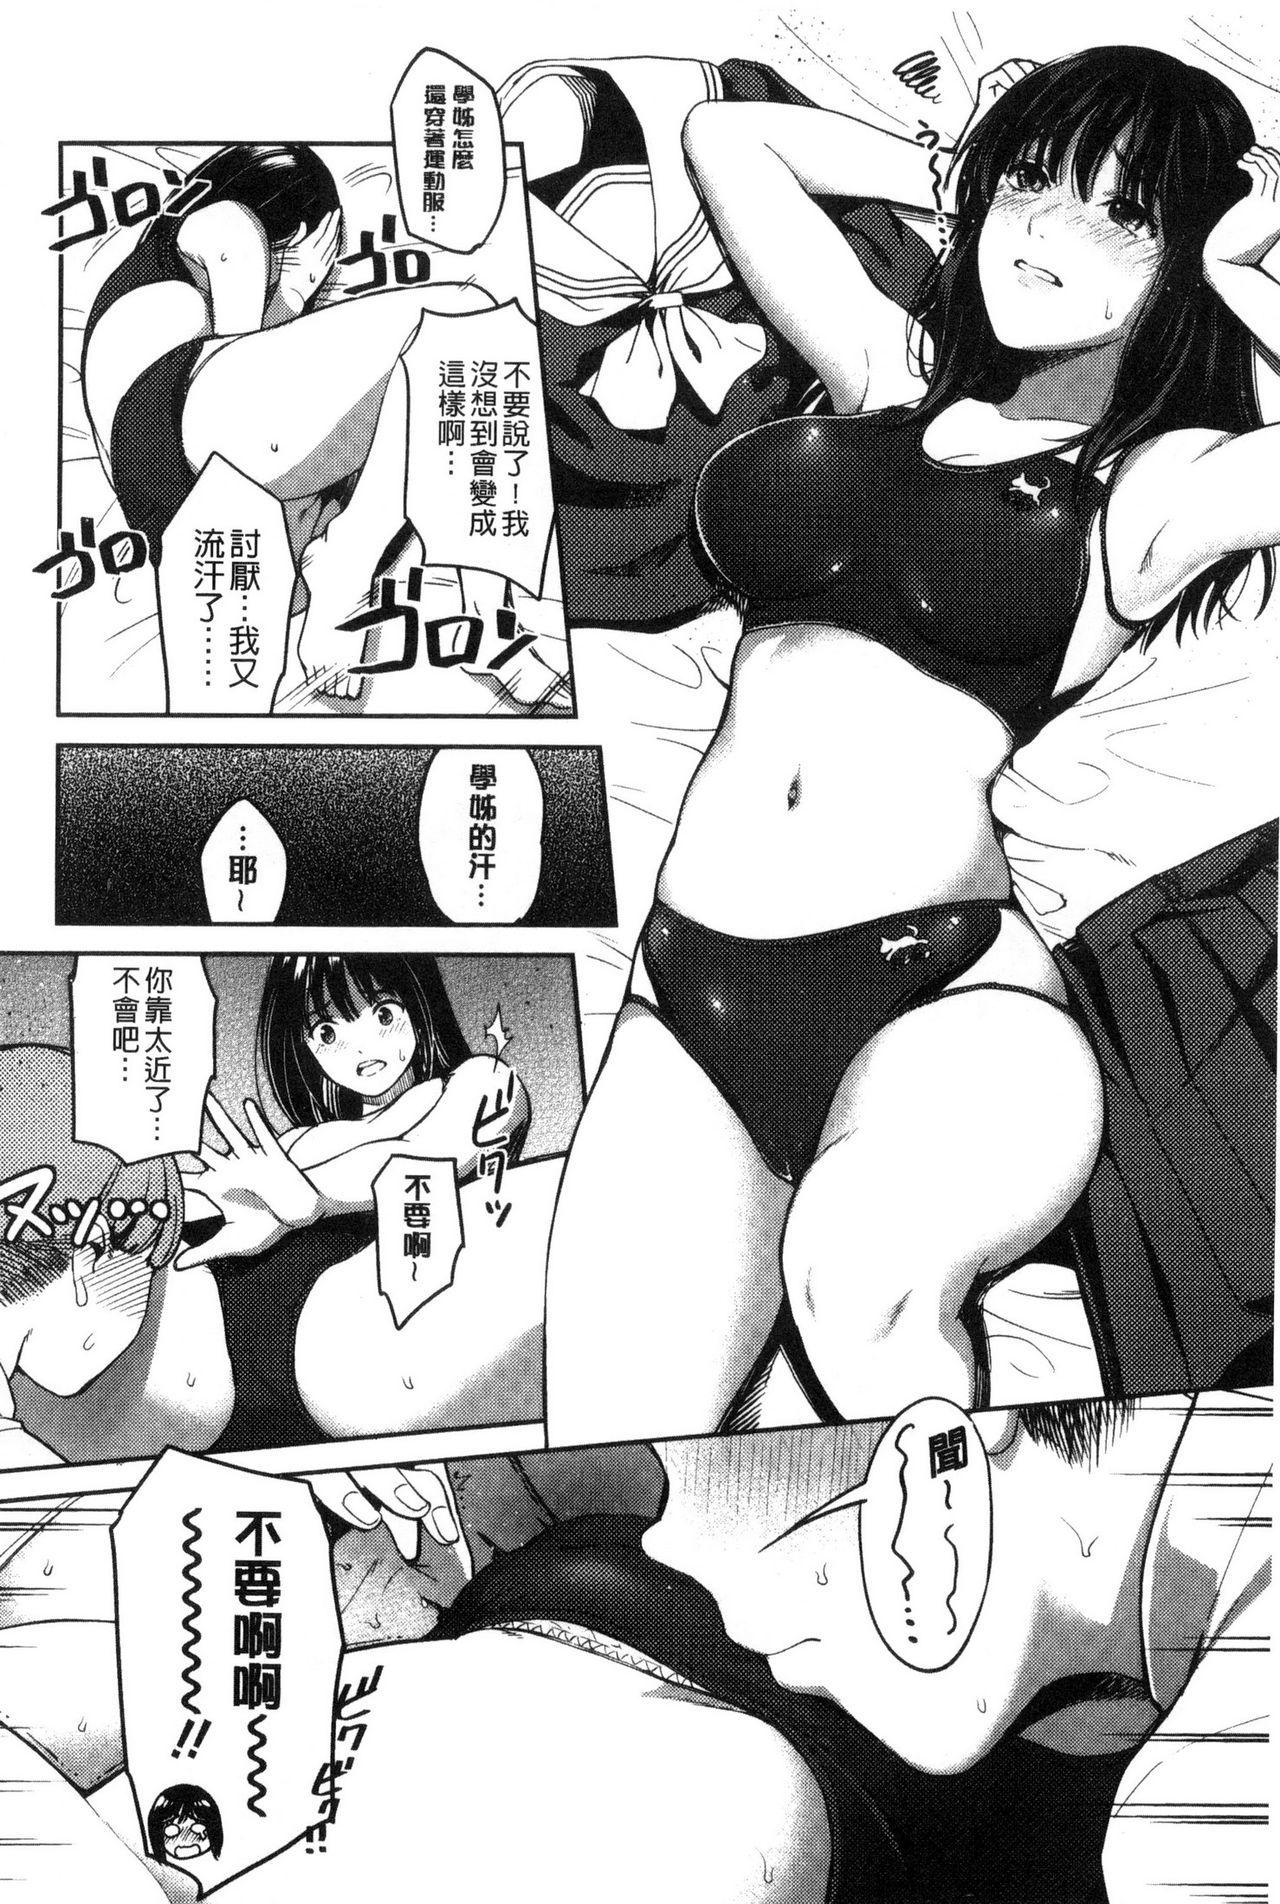 Seifuku no Mama Aishinasai! - Love in school uniform 113